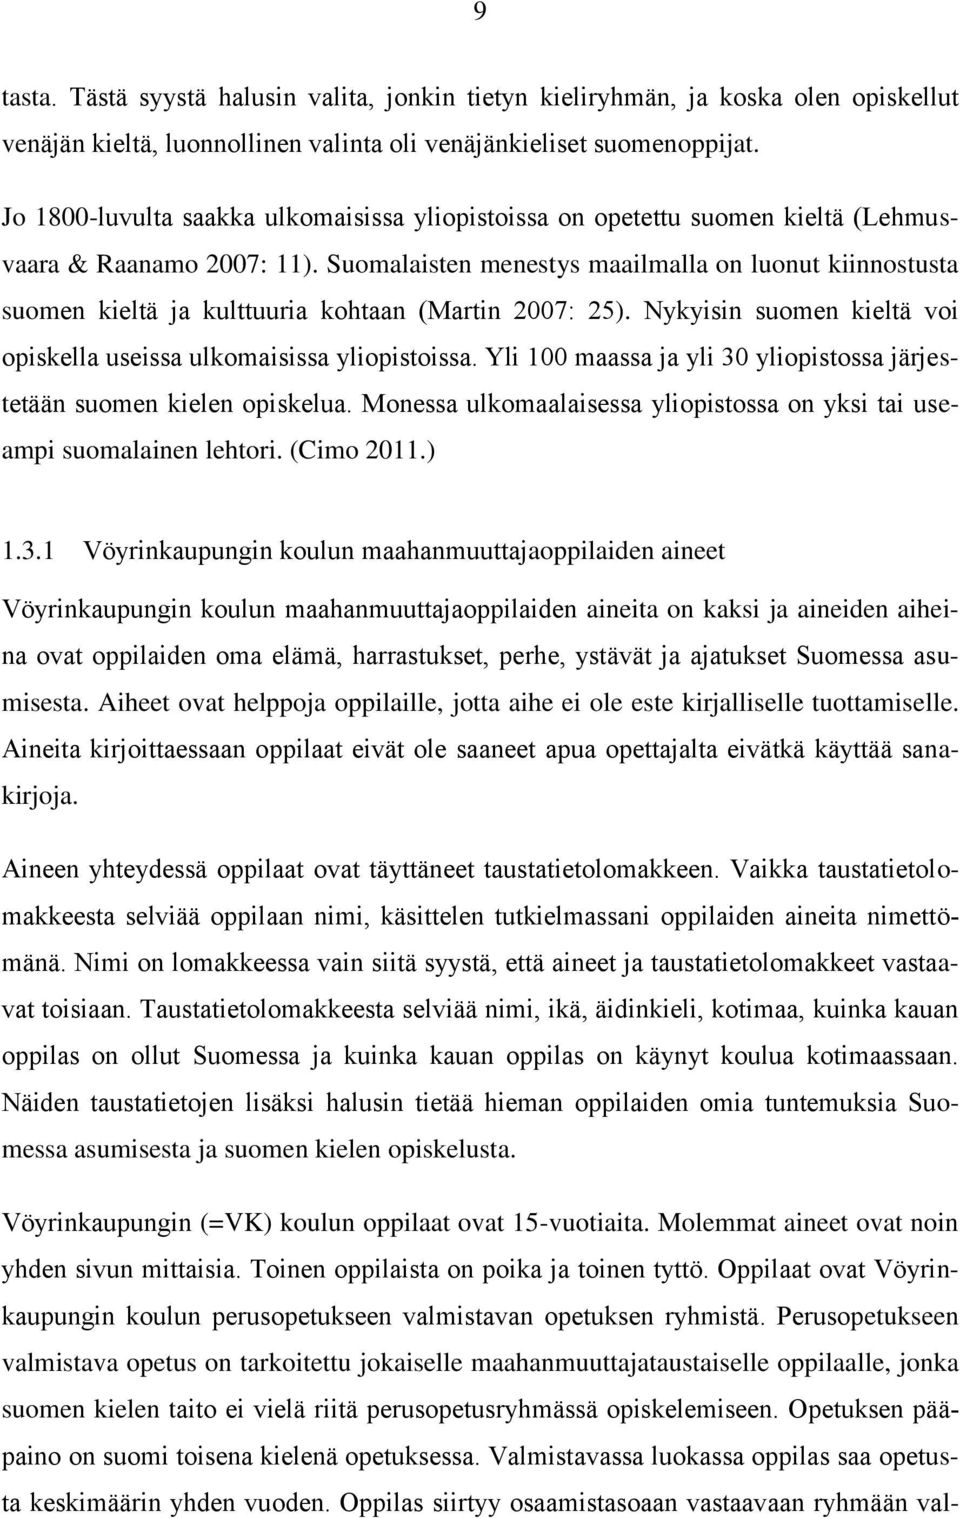 Suomalaisten menestys maailmalla on luonut kiinnostusta suomen kieltä ja kulttuuria kohtaan (Martin 2007: 25). Nykyisin suomen kieltä voi opiskella useissa ulkomaisissa yliopistoissa.